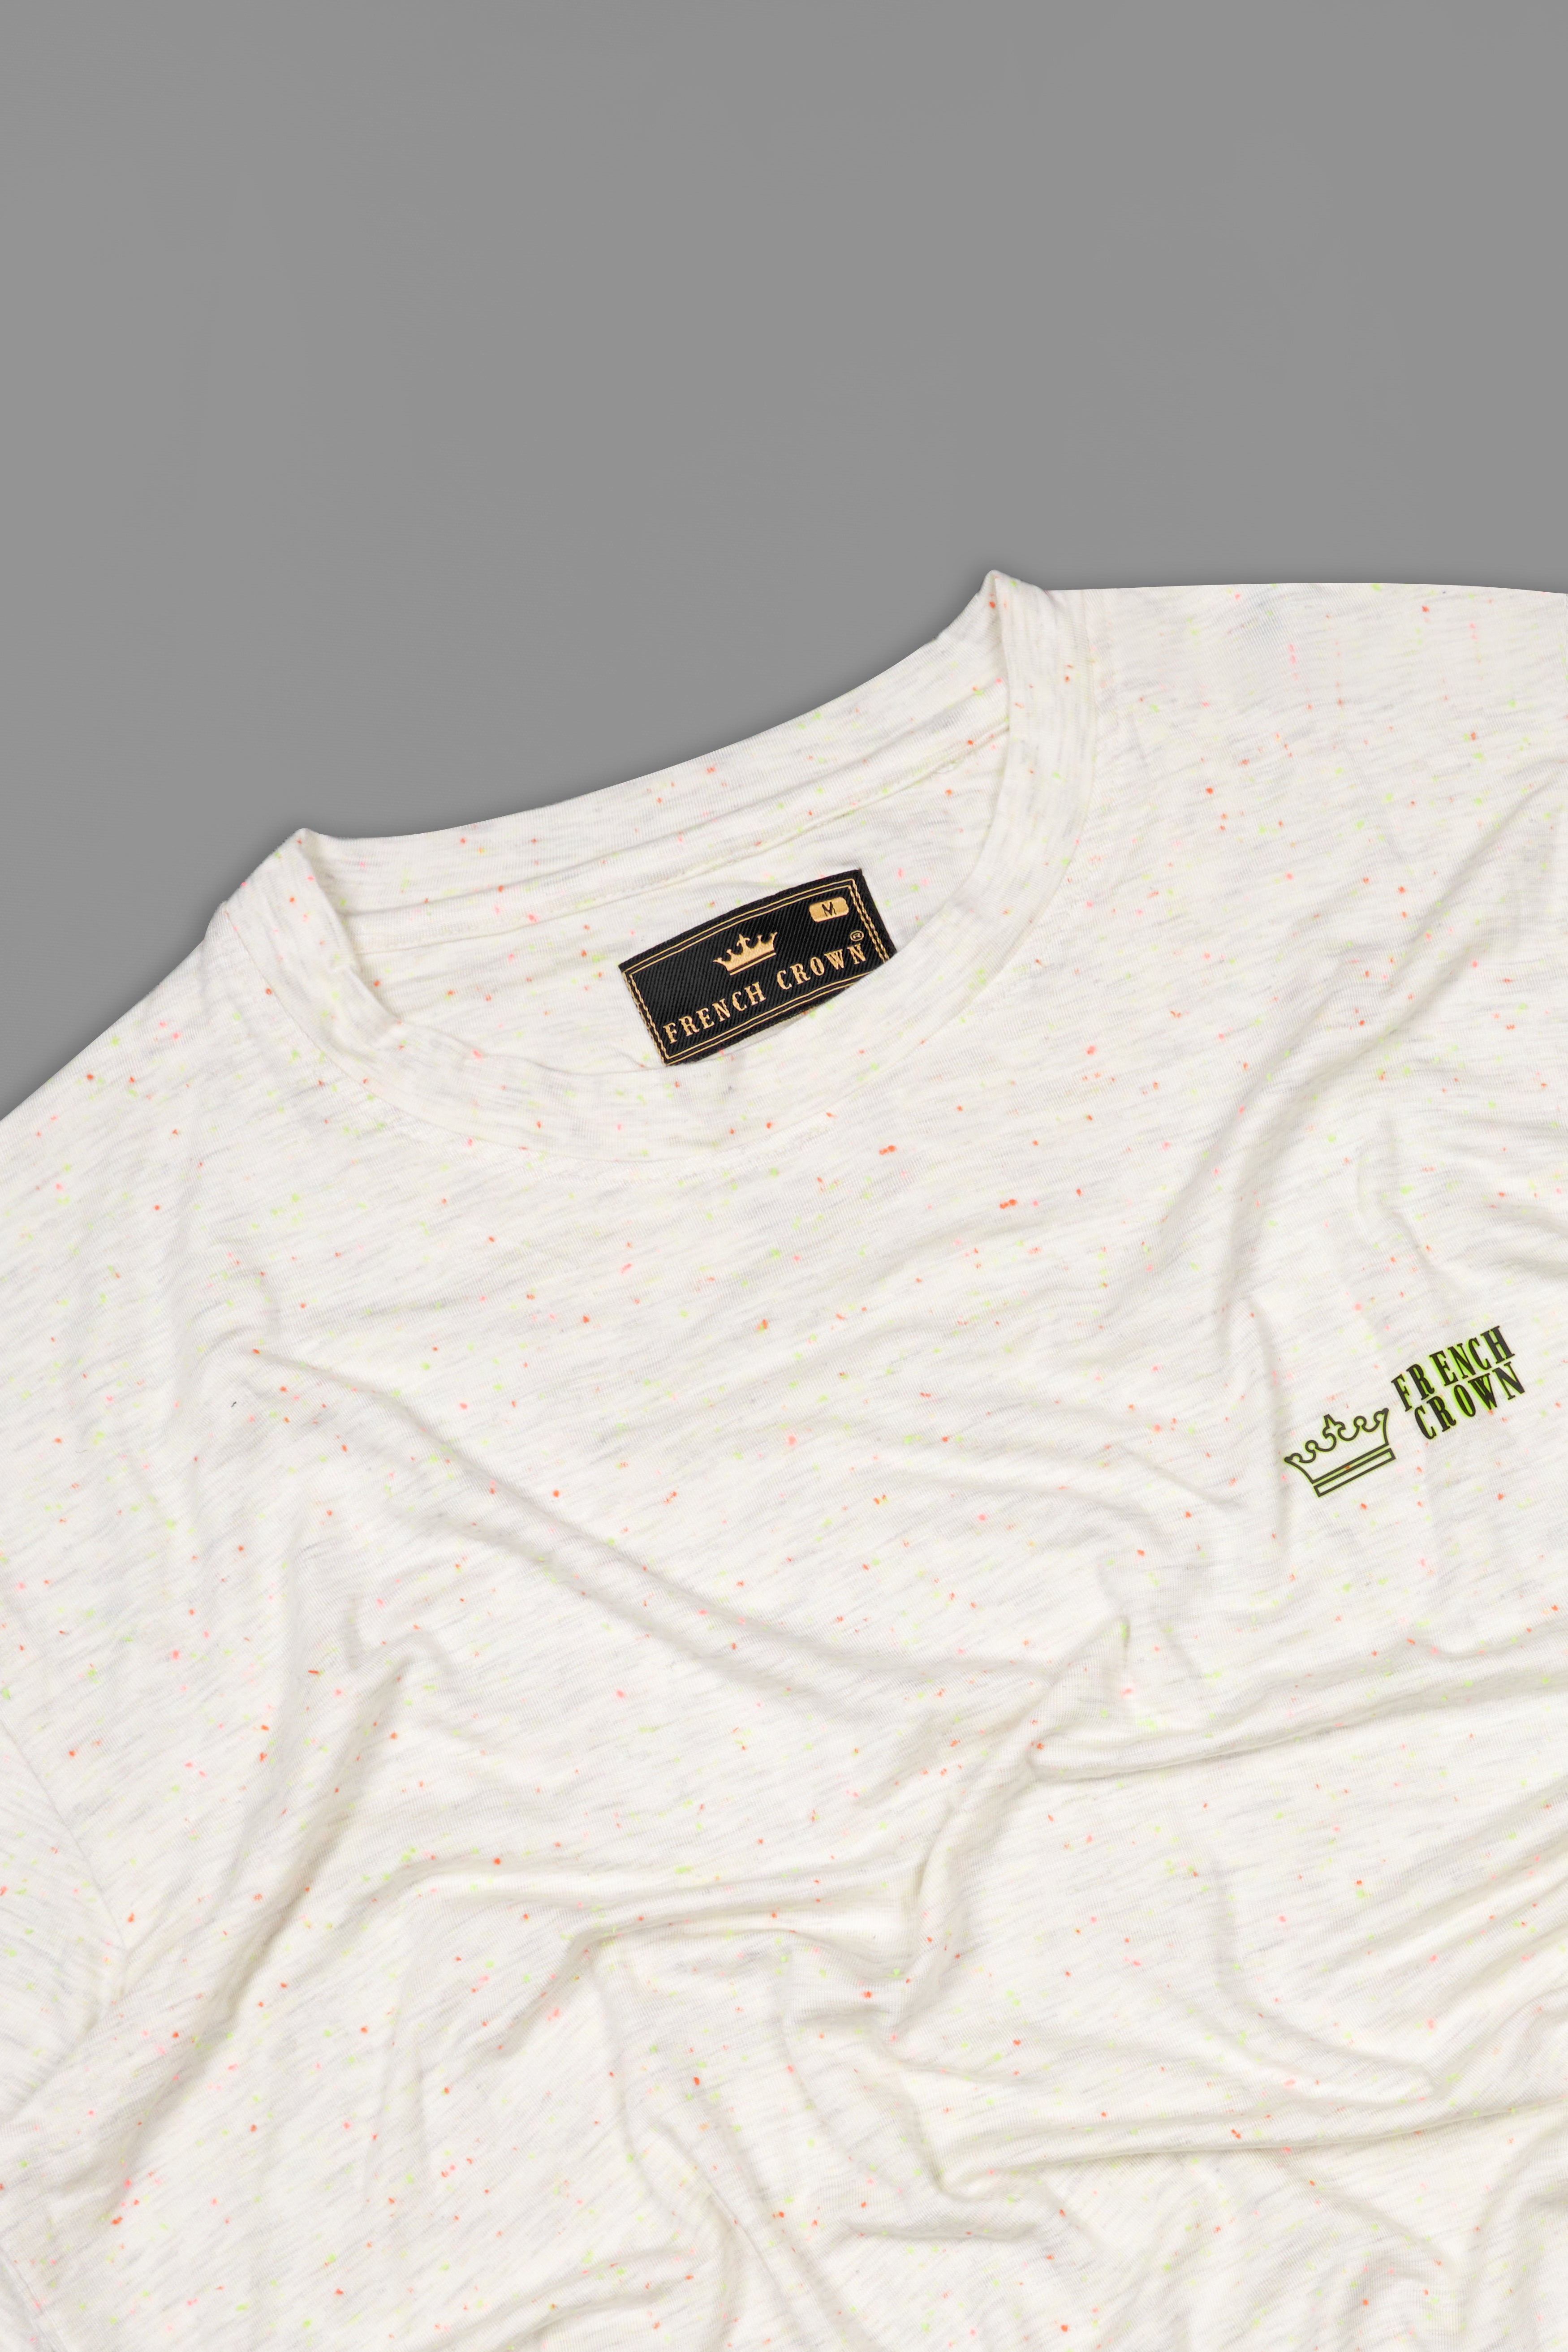 Seashell Off White Fluorescent Dobby Supreme Cotton T-Shirt TS903-S, TS903-M, TS903-L, TS903-XL, TS903-XXL